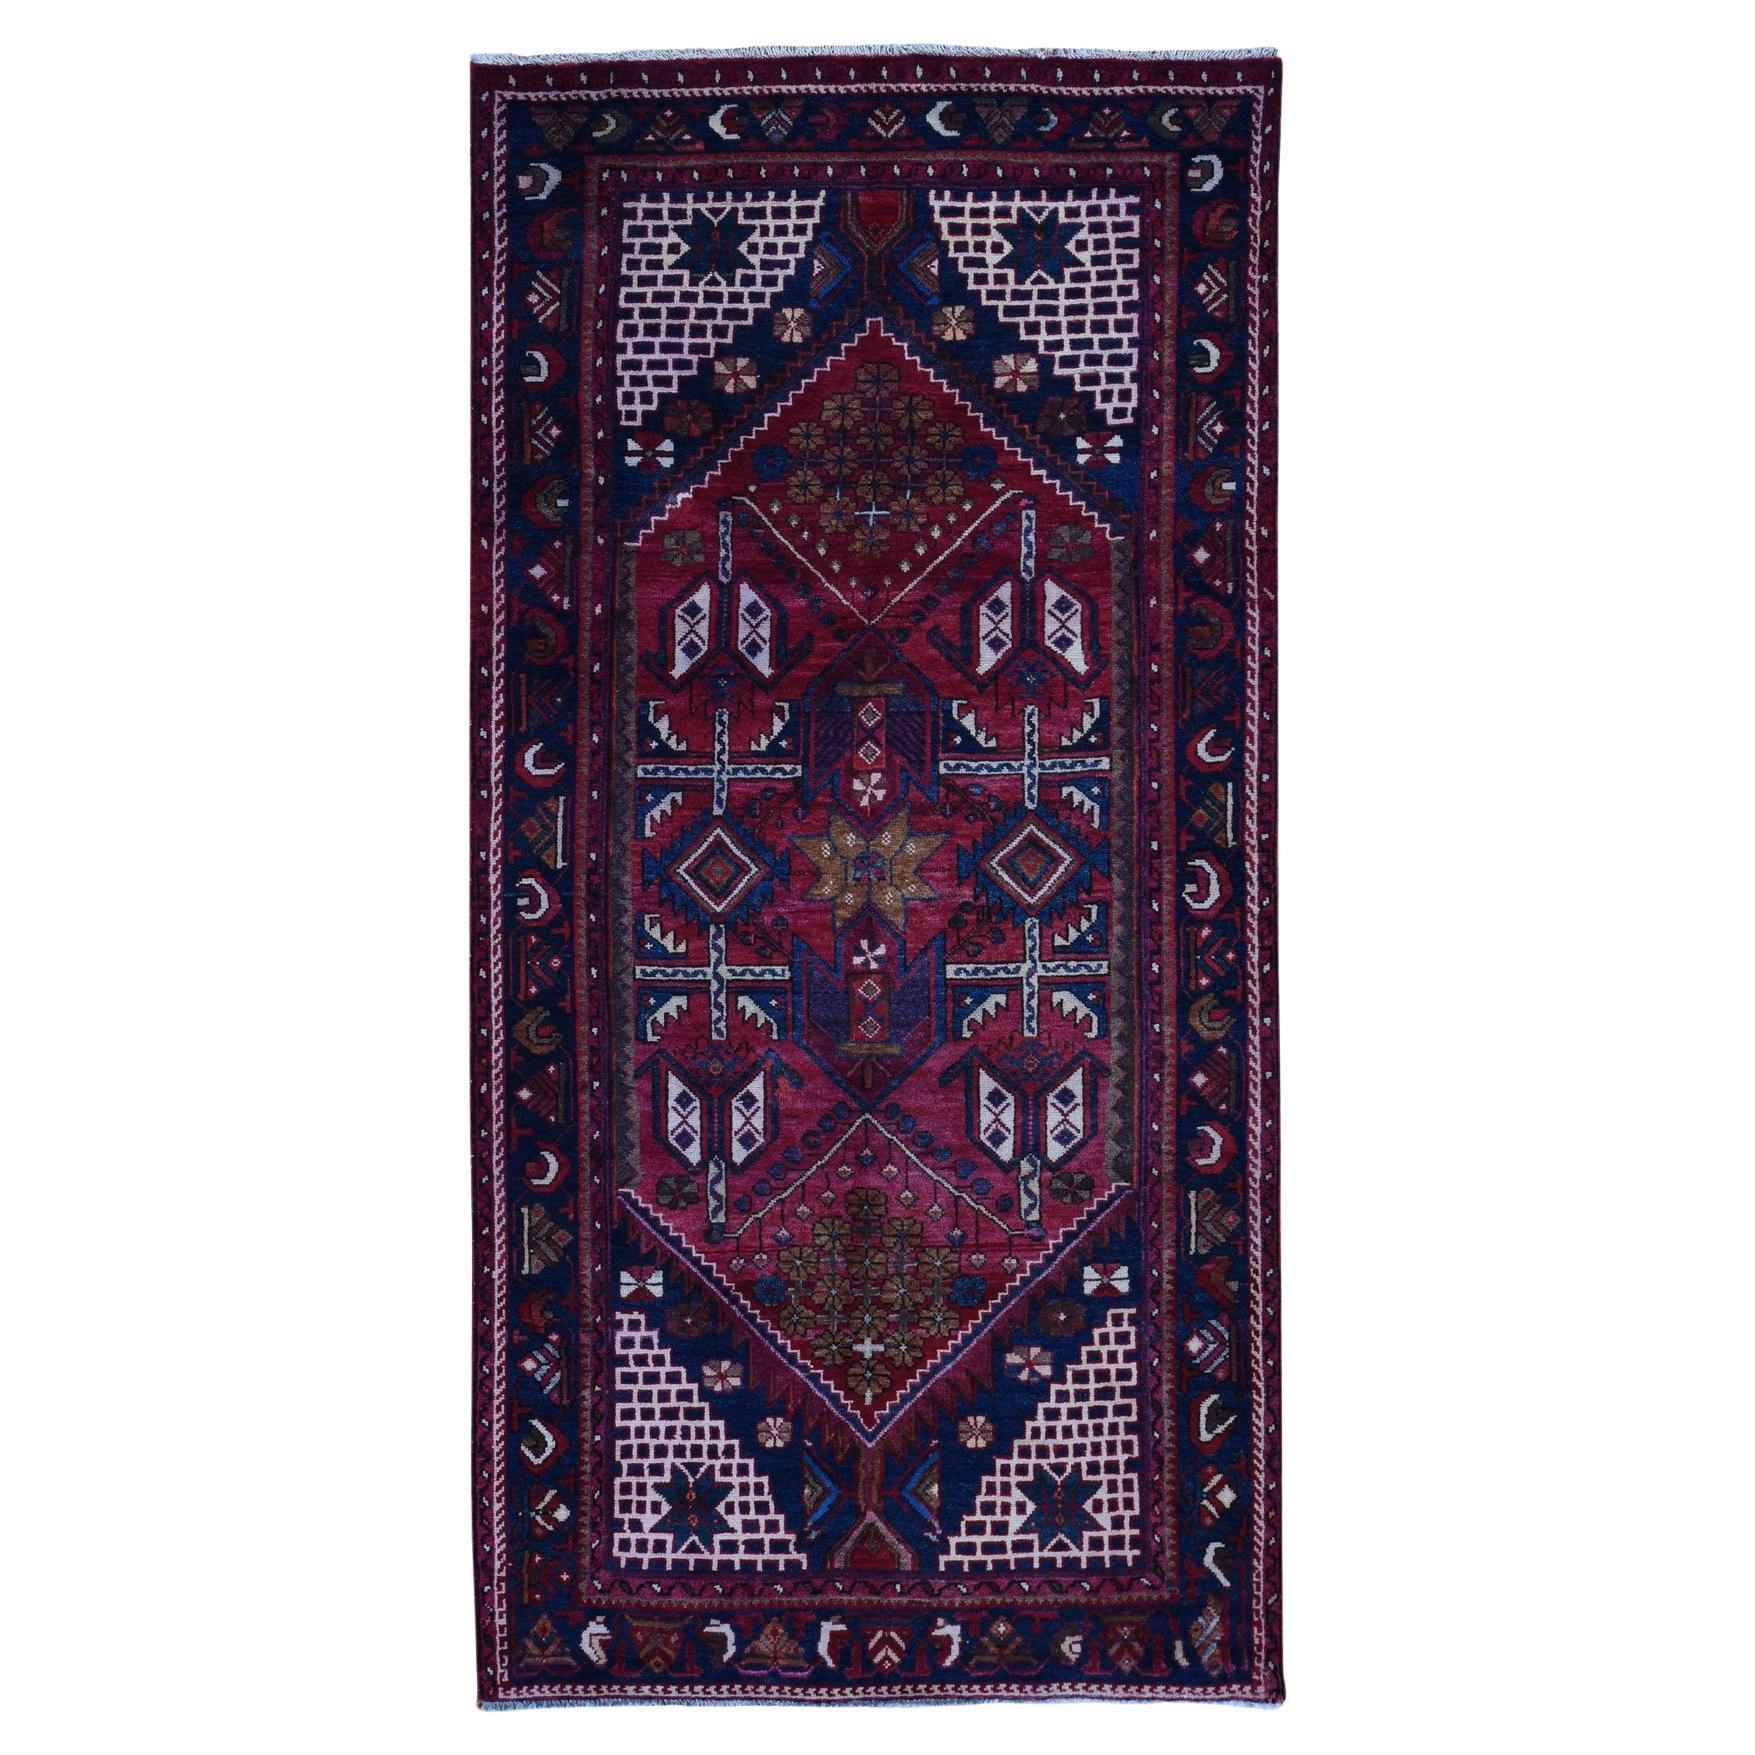 Rot Altpersisch Hamadan Hand Made Hand geknüpft reine Wolle Galerie Größe Läufer Teppich